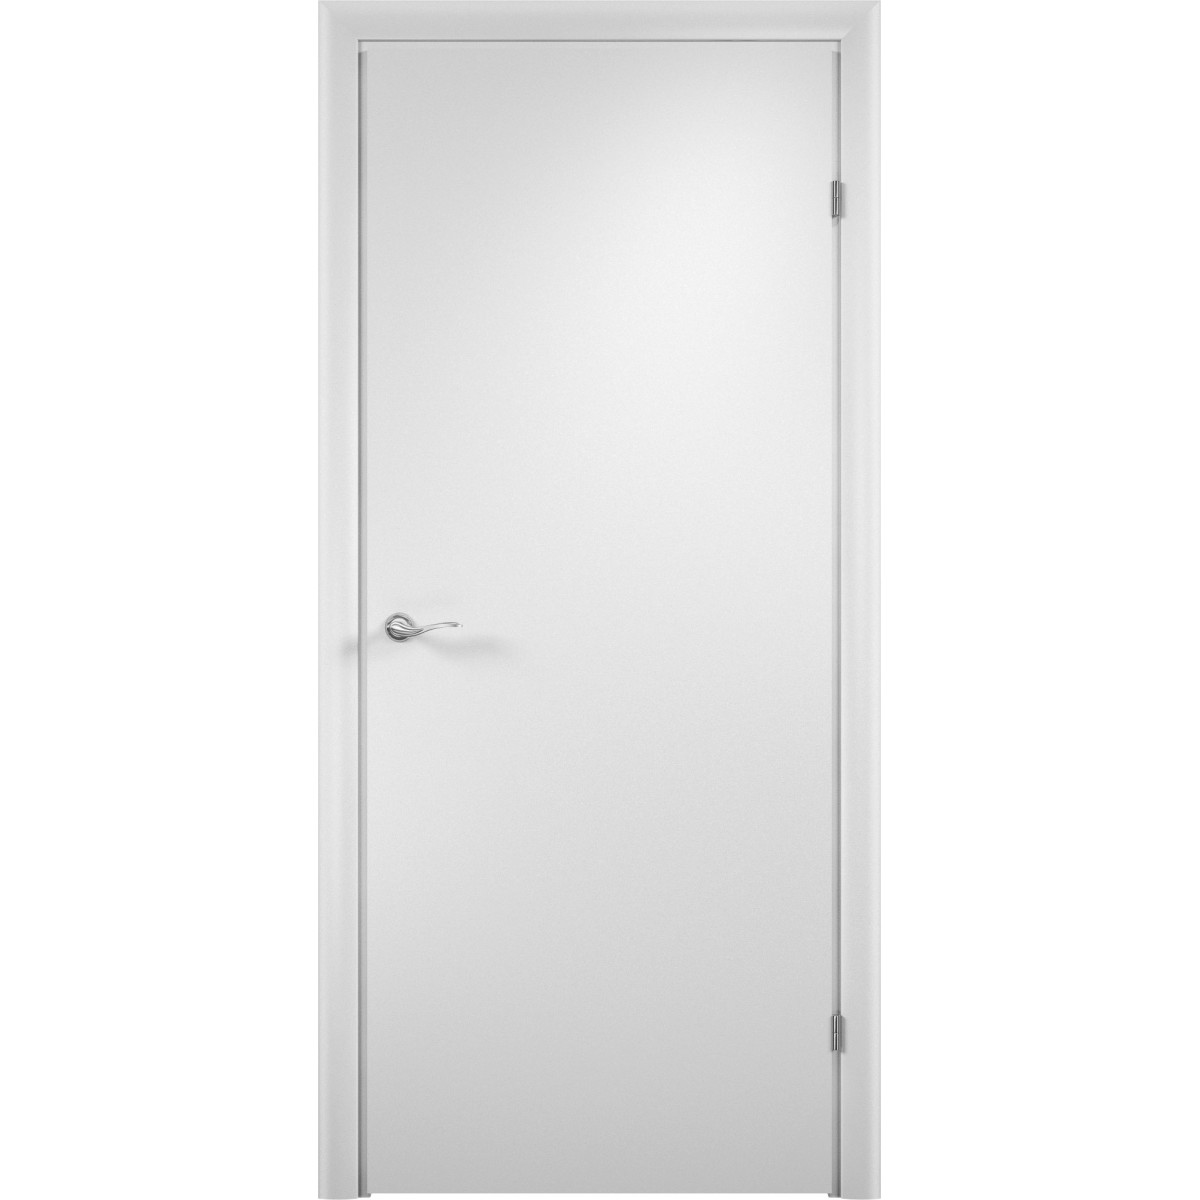 Блок дверной глухой Verda 67x204 см, ламинация, цвет белый, с фурнитурой